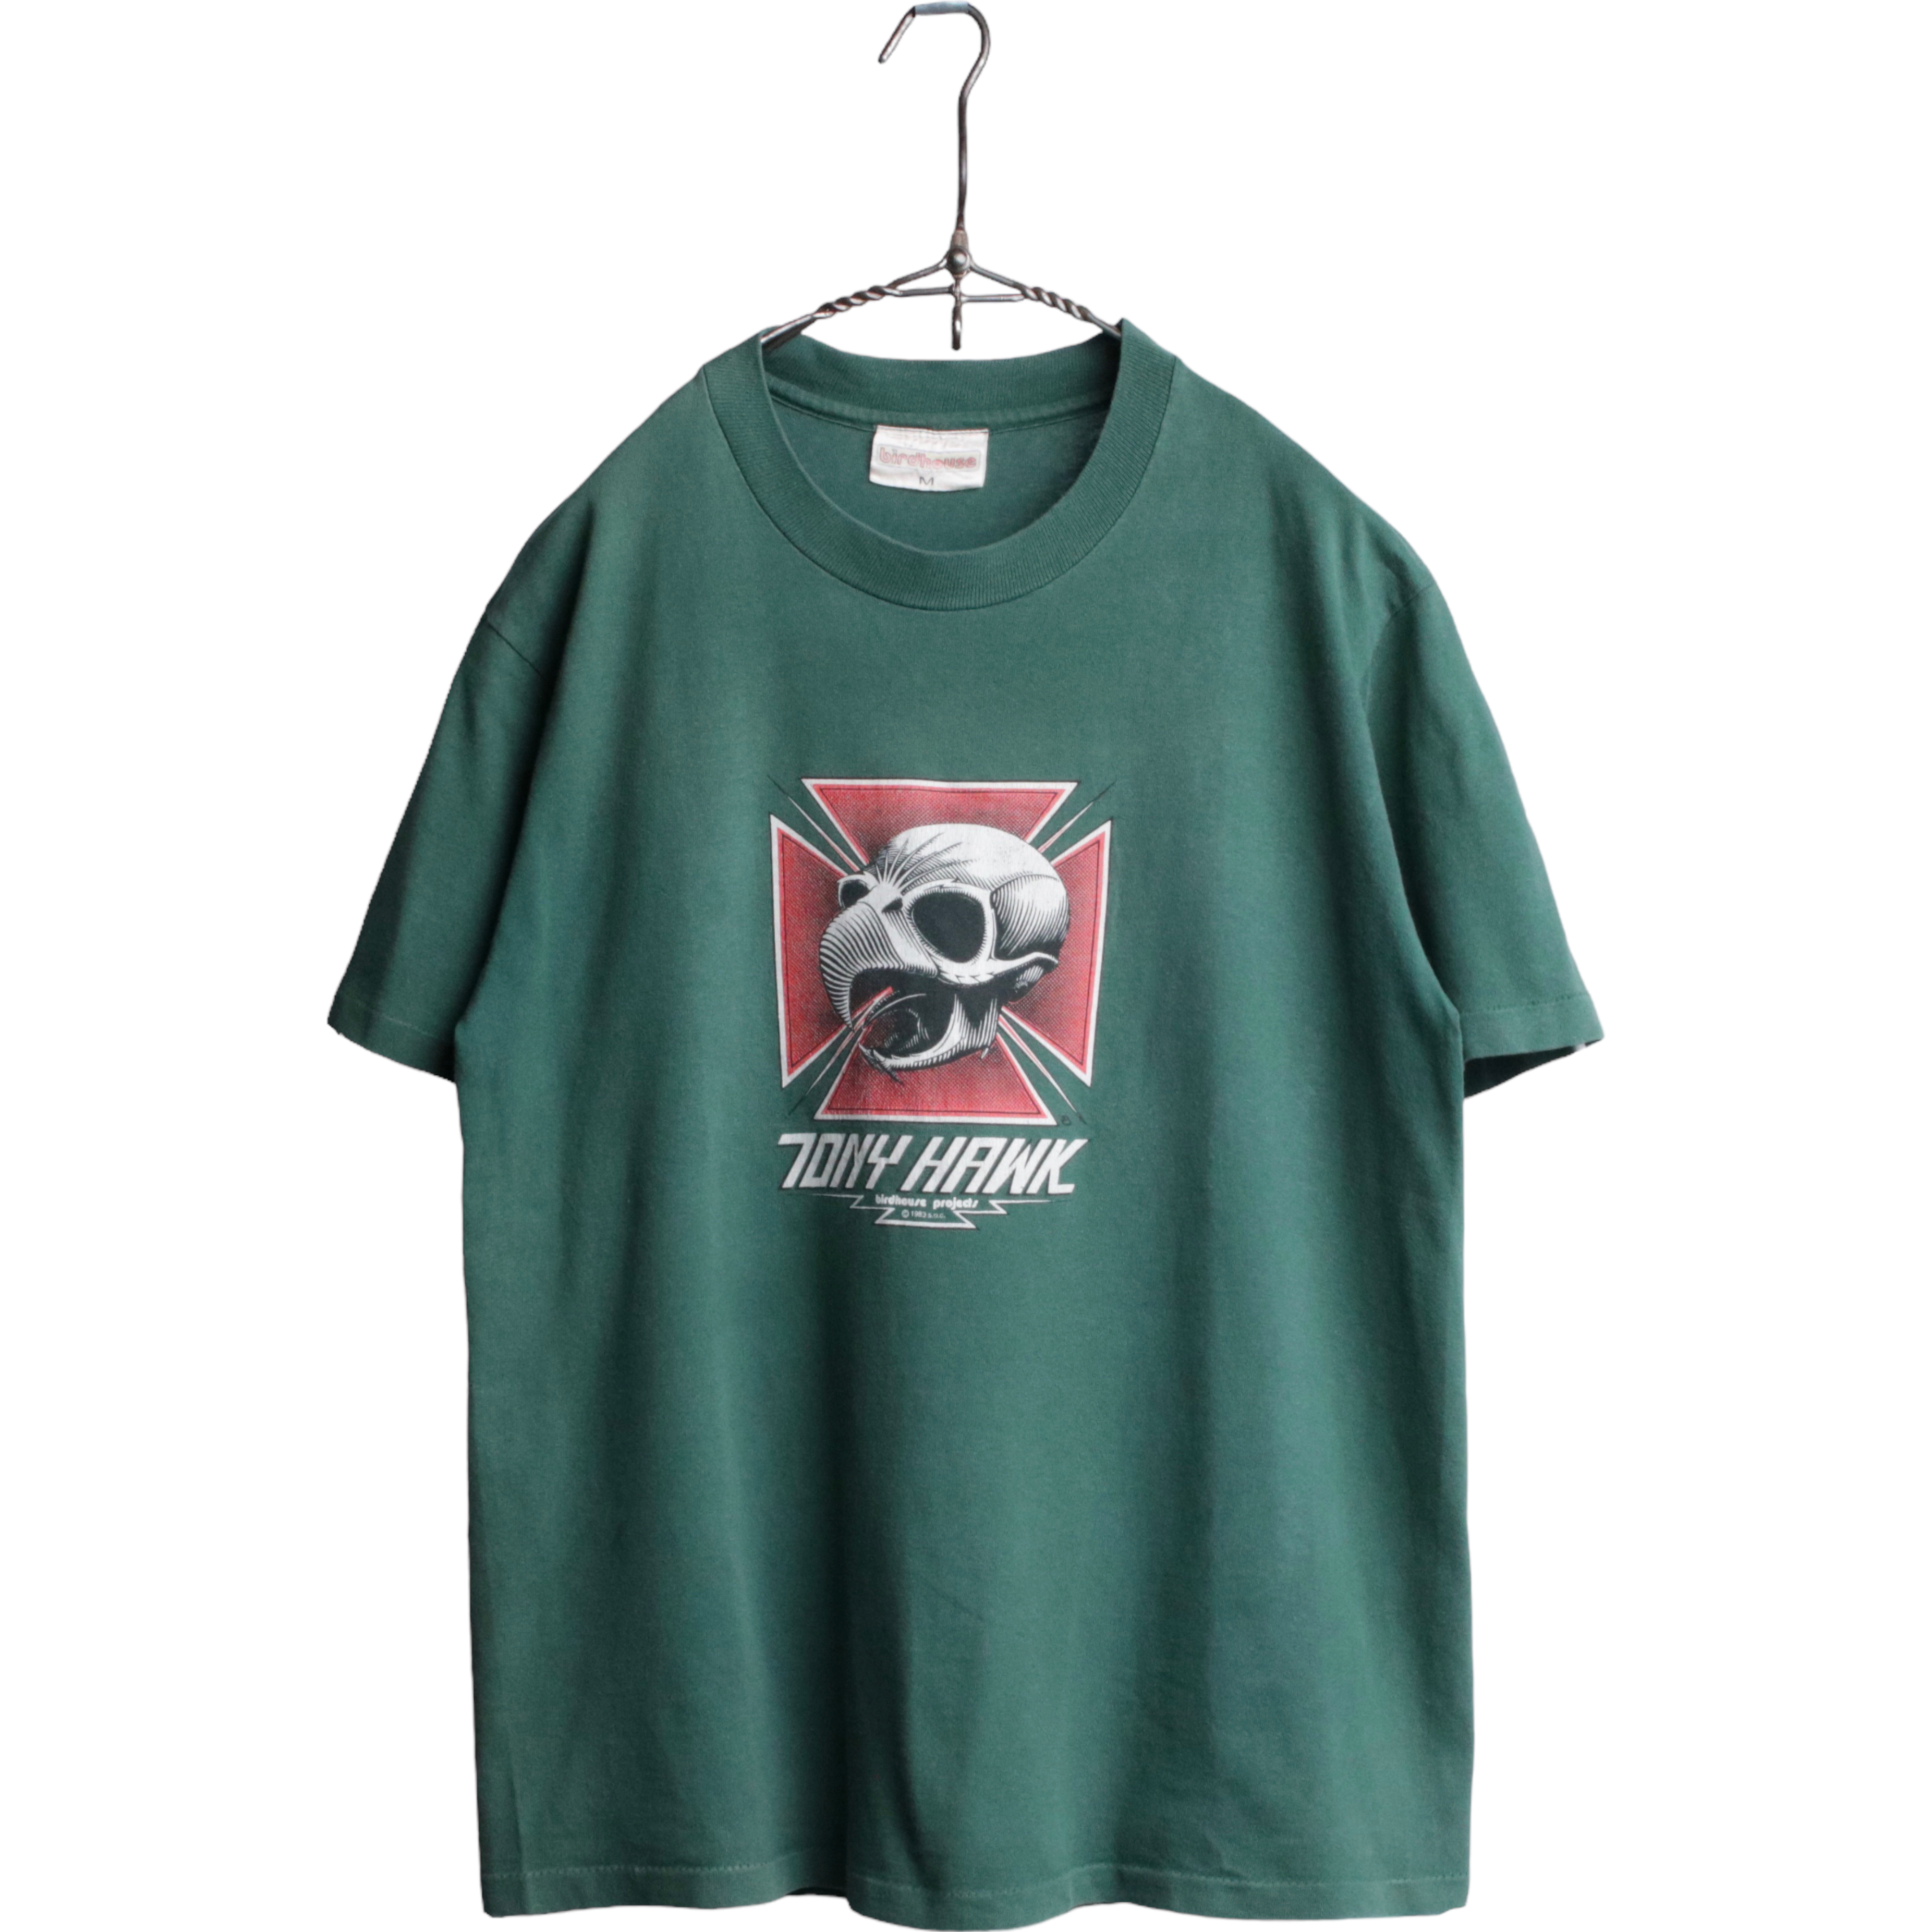 21,450円vintage Tony hawk tシャツ